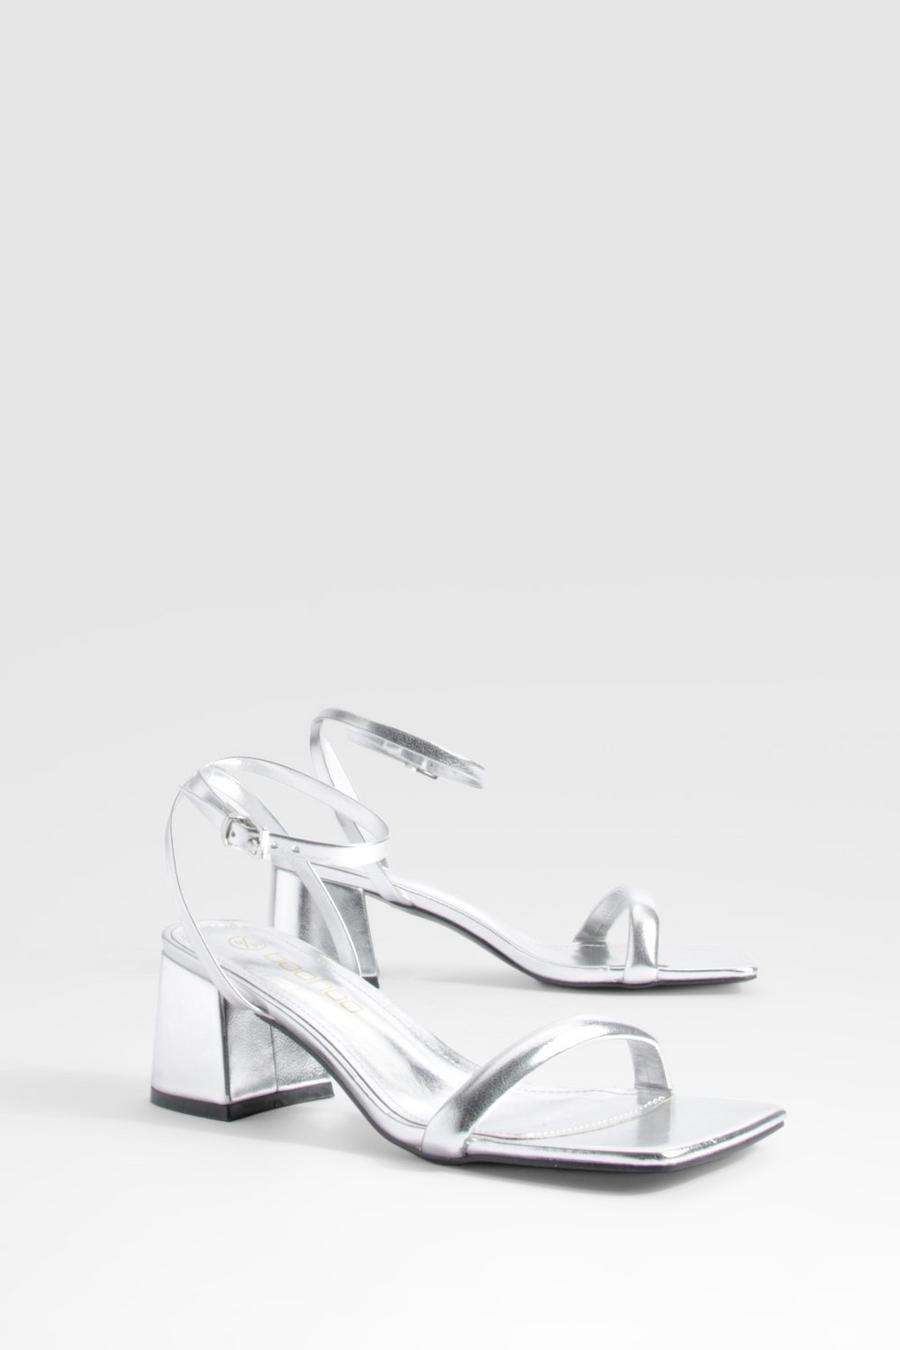 Silver Metallic sandaletter med fyrkantig tå och blockklack